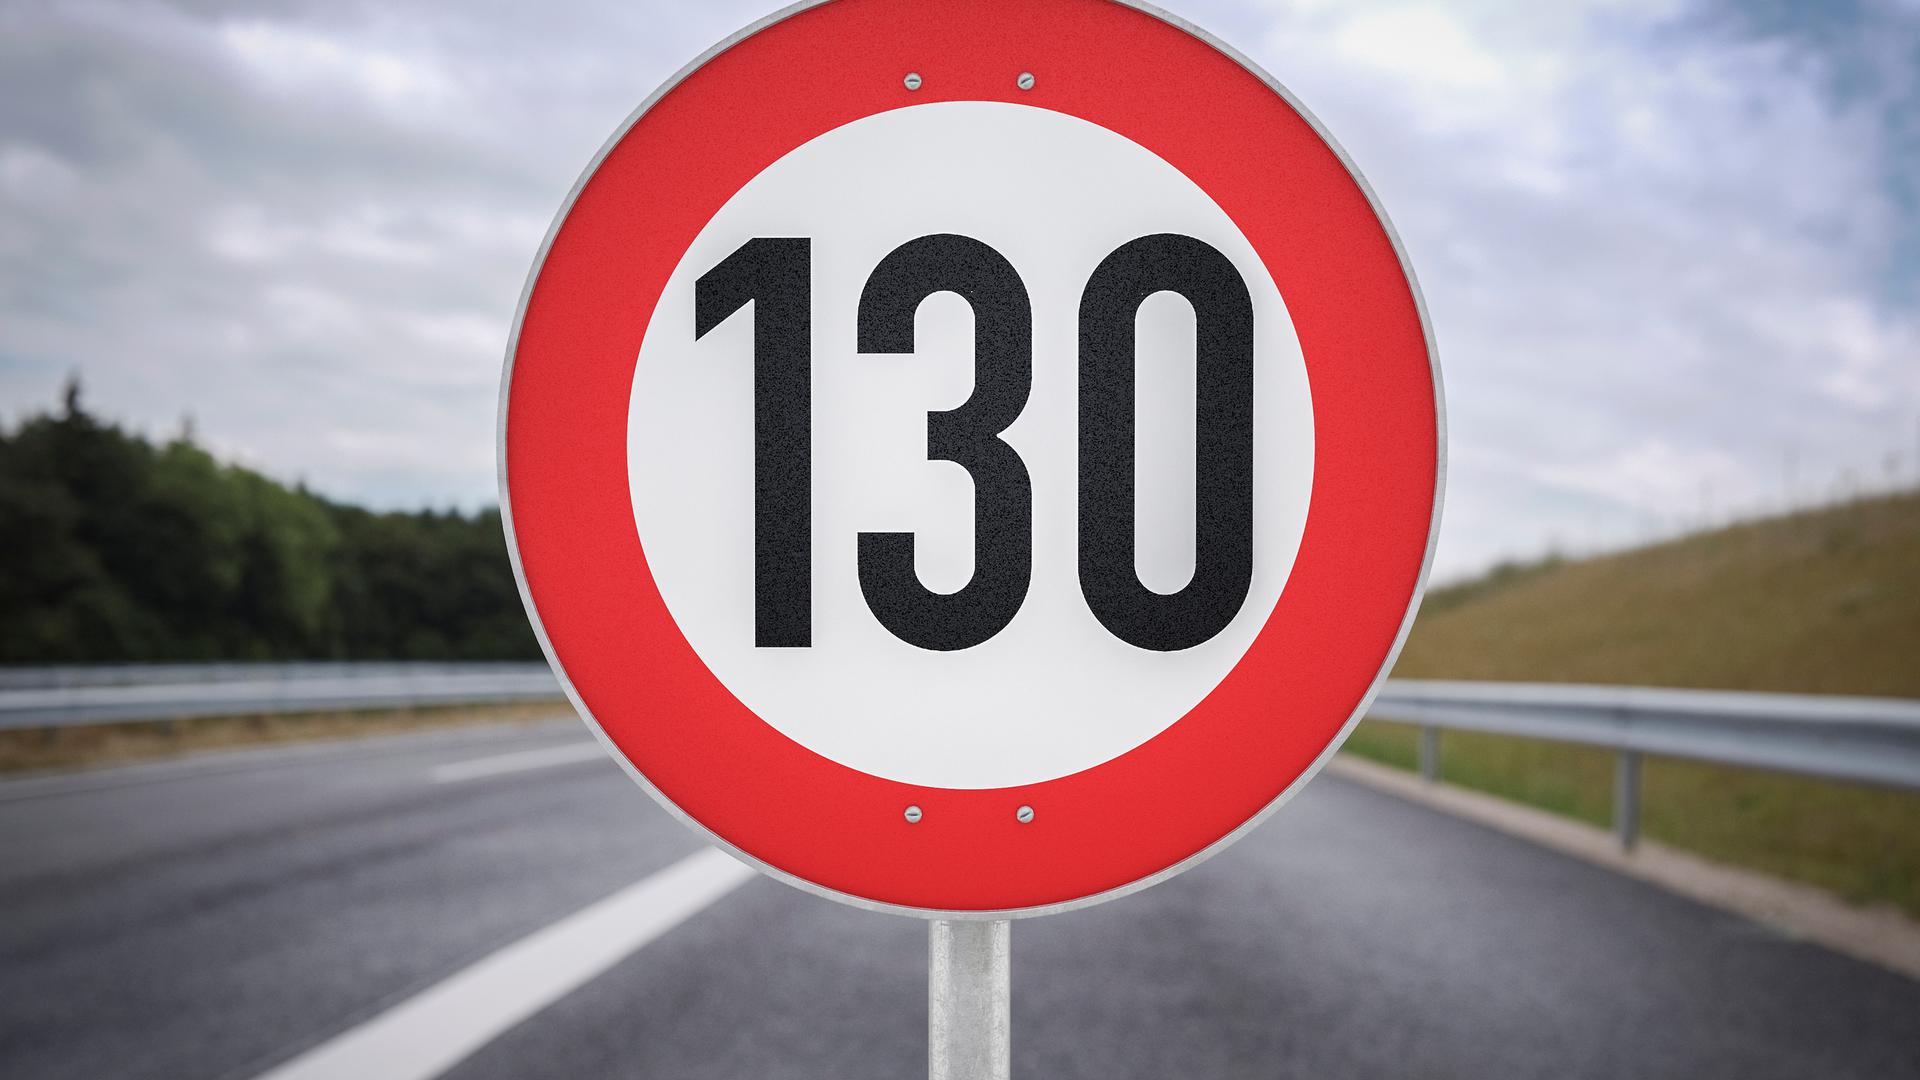 Le gouvernement allemand recommande actuellement une vitesse de 130 km/h sur les autoroutes.